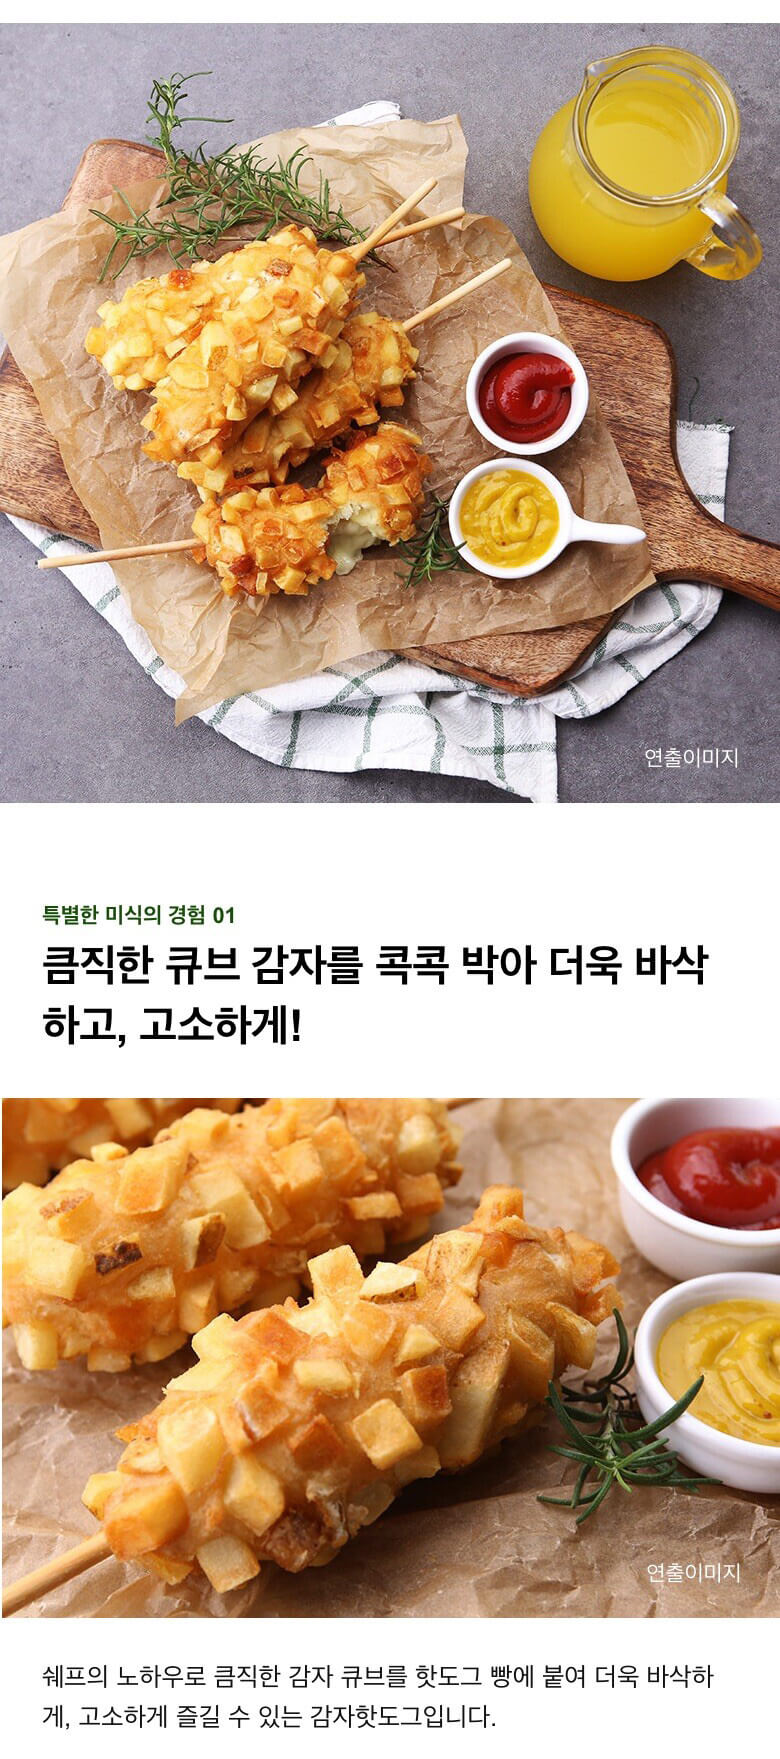 韓國食品-[CJ] Gourmet 薯仔芝士熱狗 400g